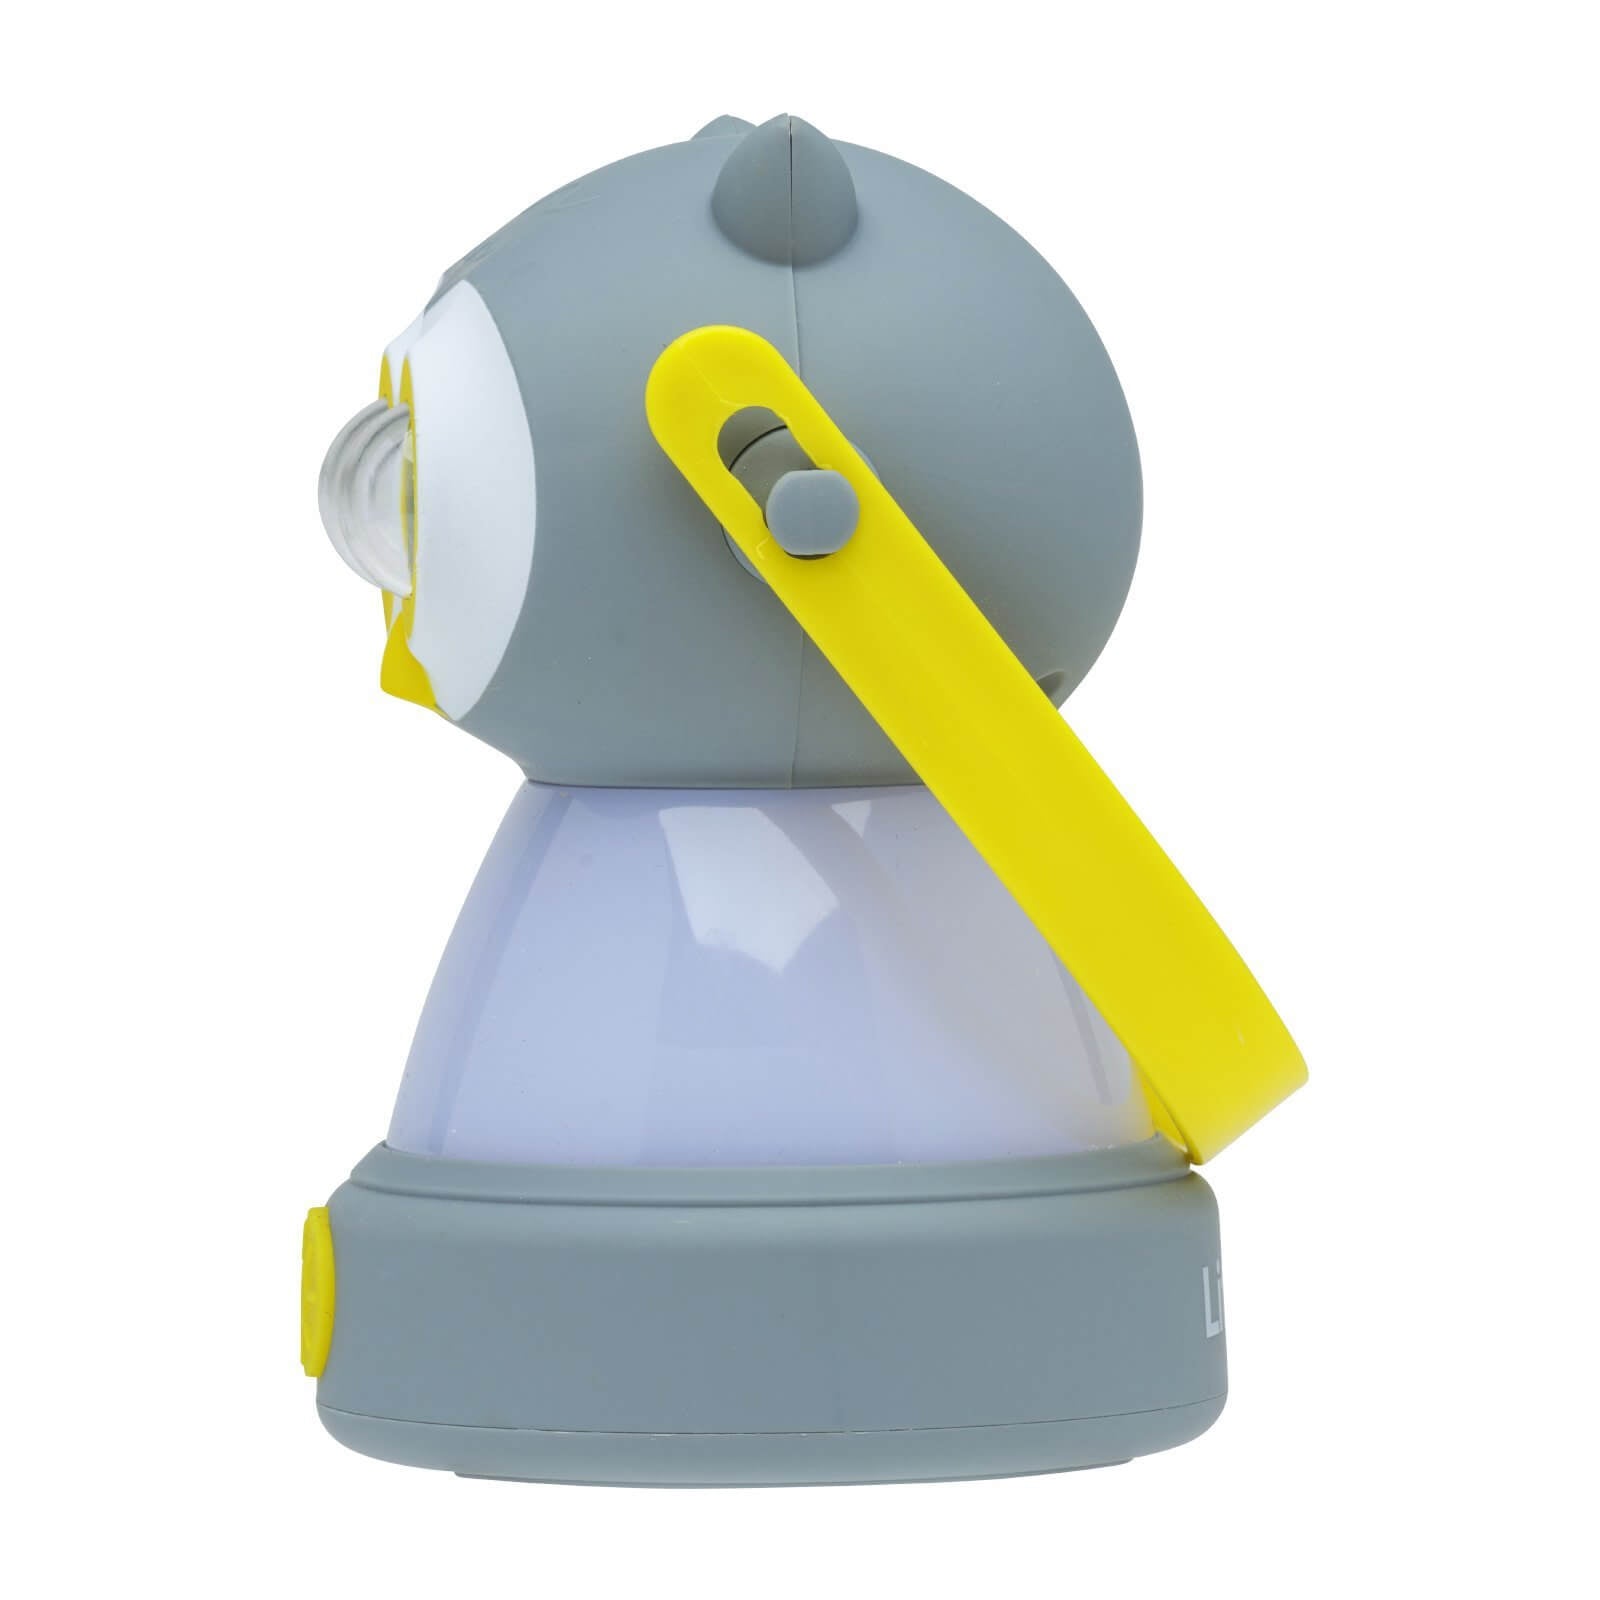 LitezAll Owl Themed Headlamp and Lantern Combo - LitezAll - Combo - 20